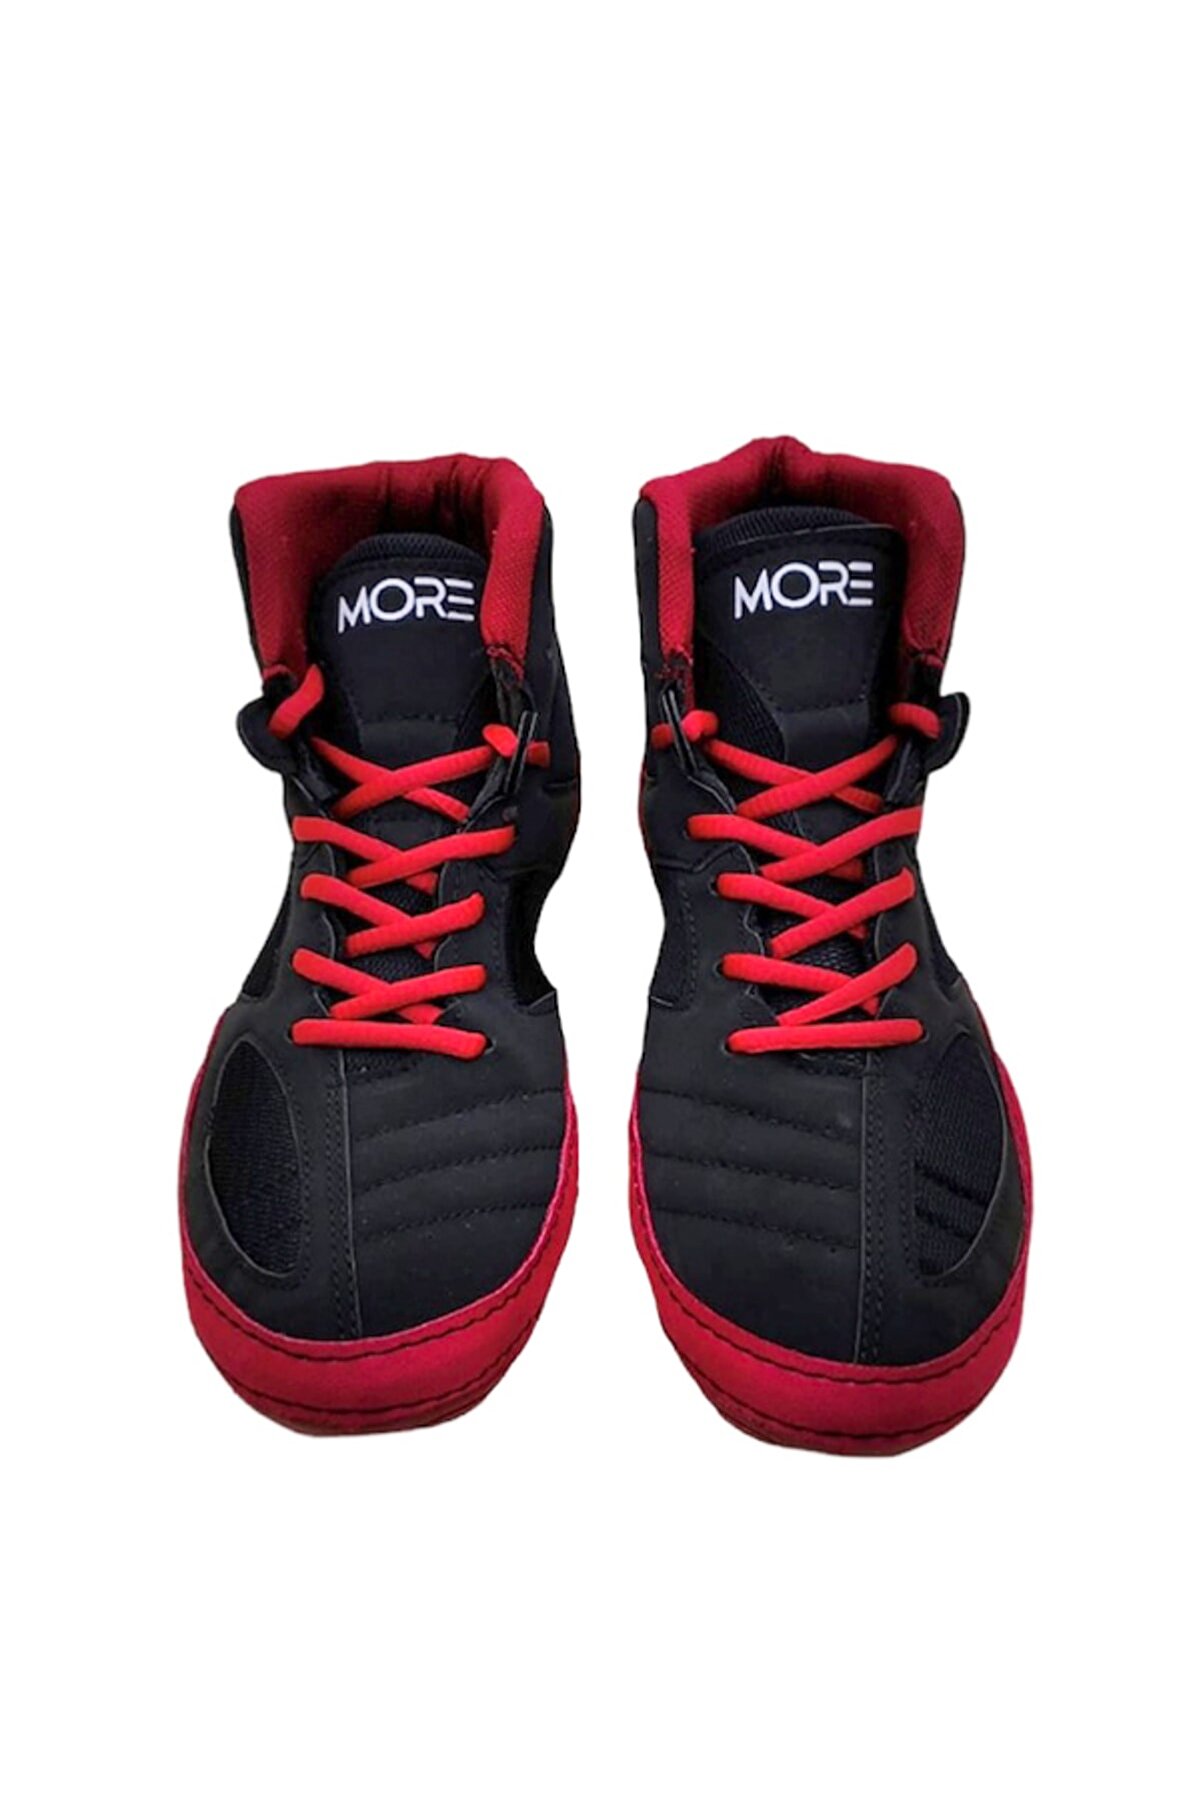 More Sports Güreş Ayakkabısı (kırmızı-siyah)